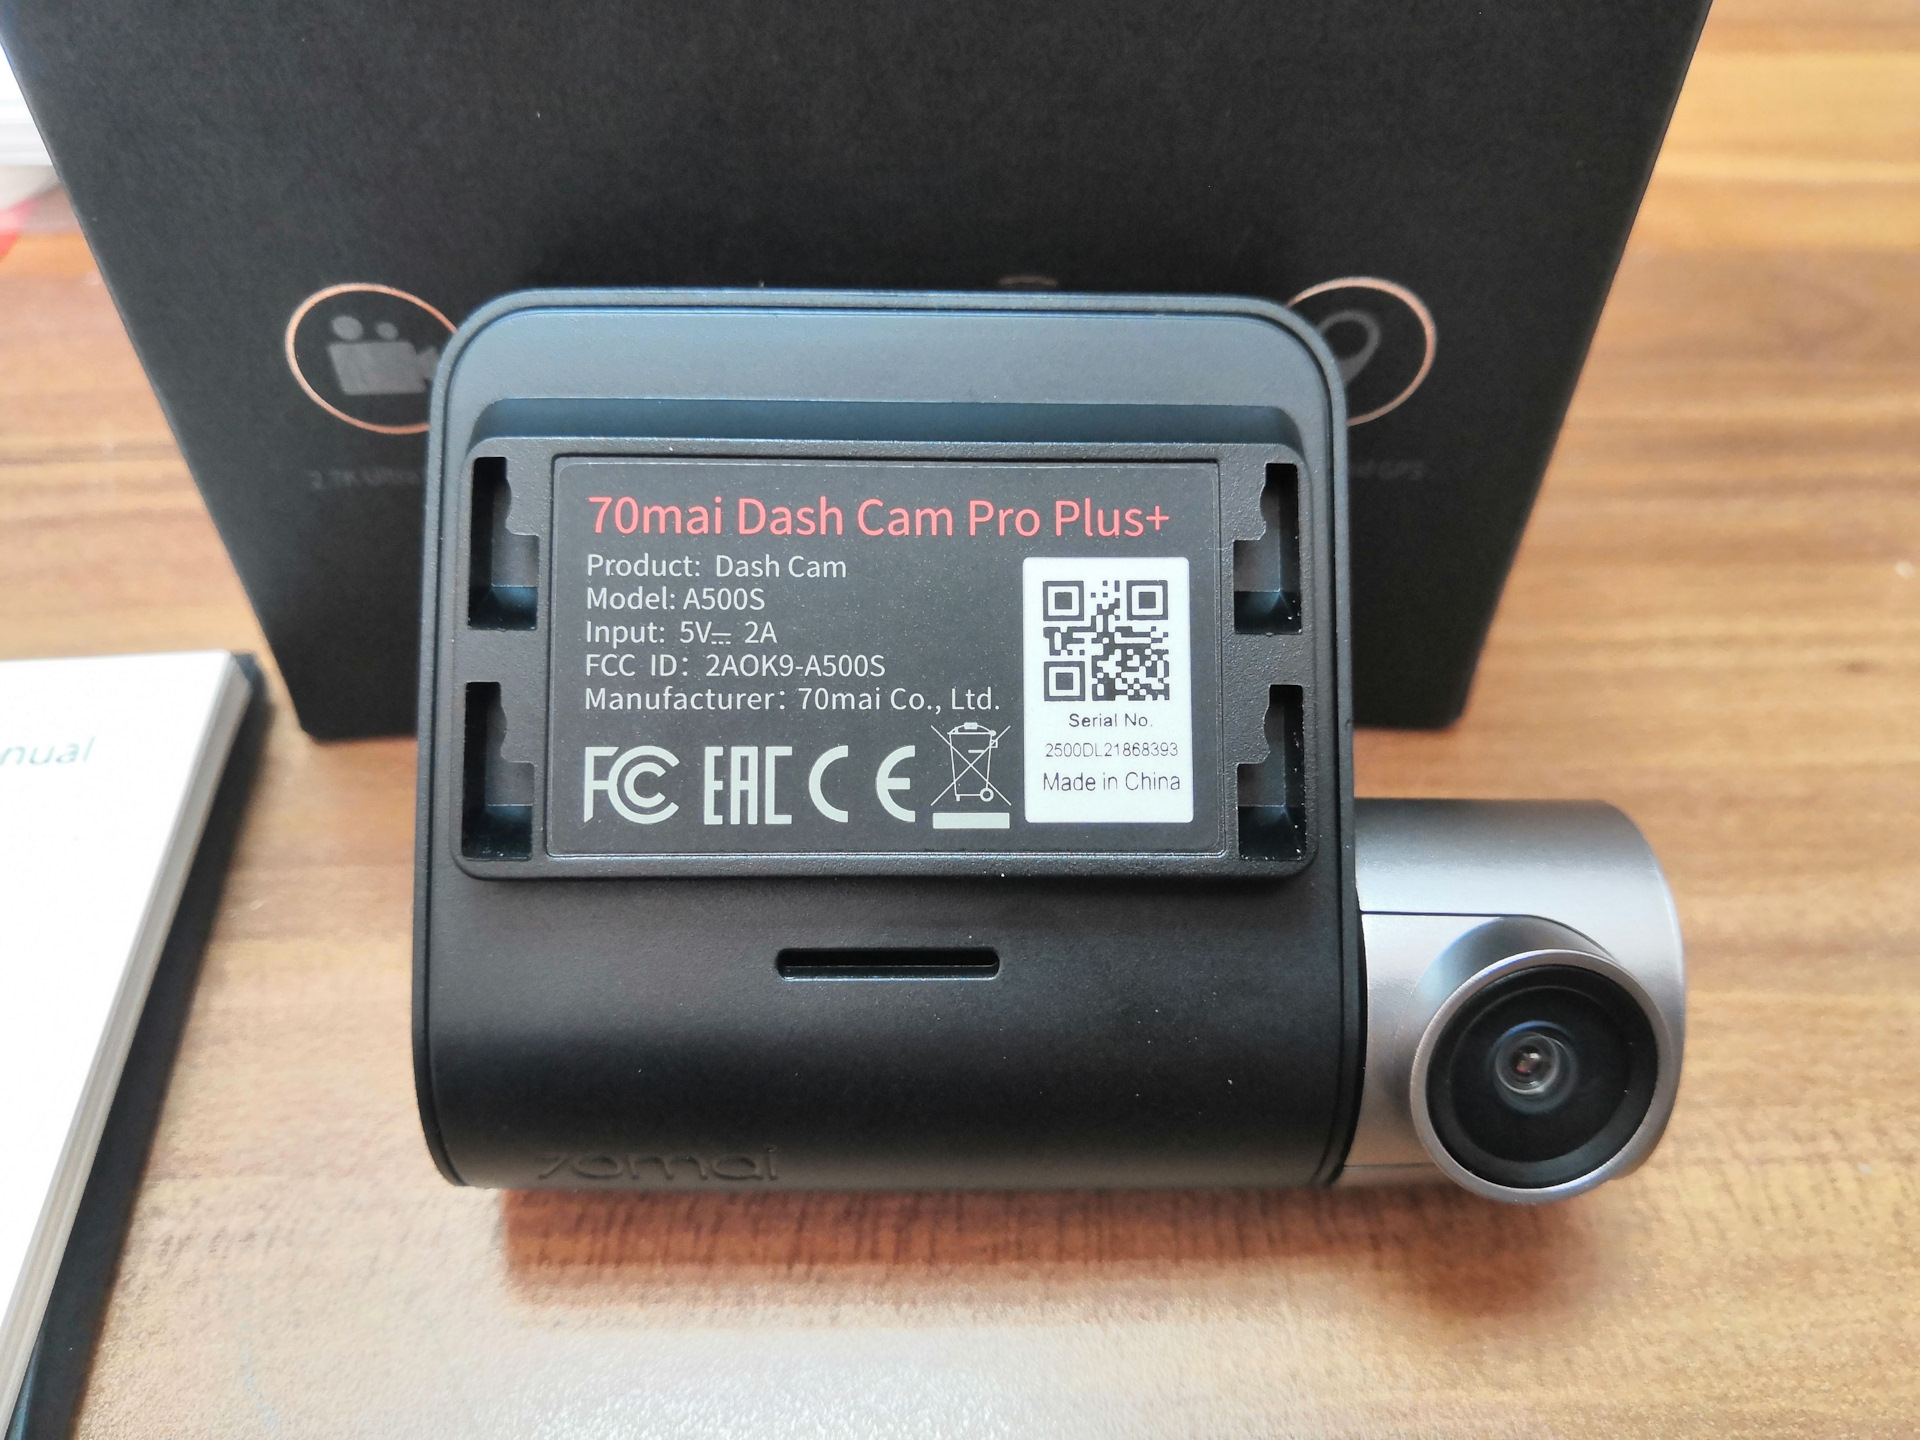 Регистратор 70mai pro. Видеорегистратор 70mai Dash cam Pro Plus+. Видеорегистратор 70mai Dash cam Pro Plus a500s. Регистратор 70 mai Dash cam Pro Plus. Видеорегистратор 70mai Dash cam Pro Plus+ a500s, GPS, ГЛОНАСС, черный.